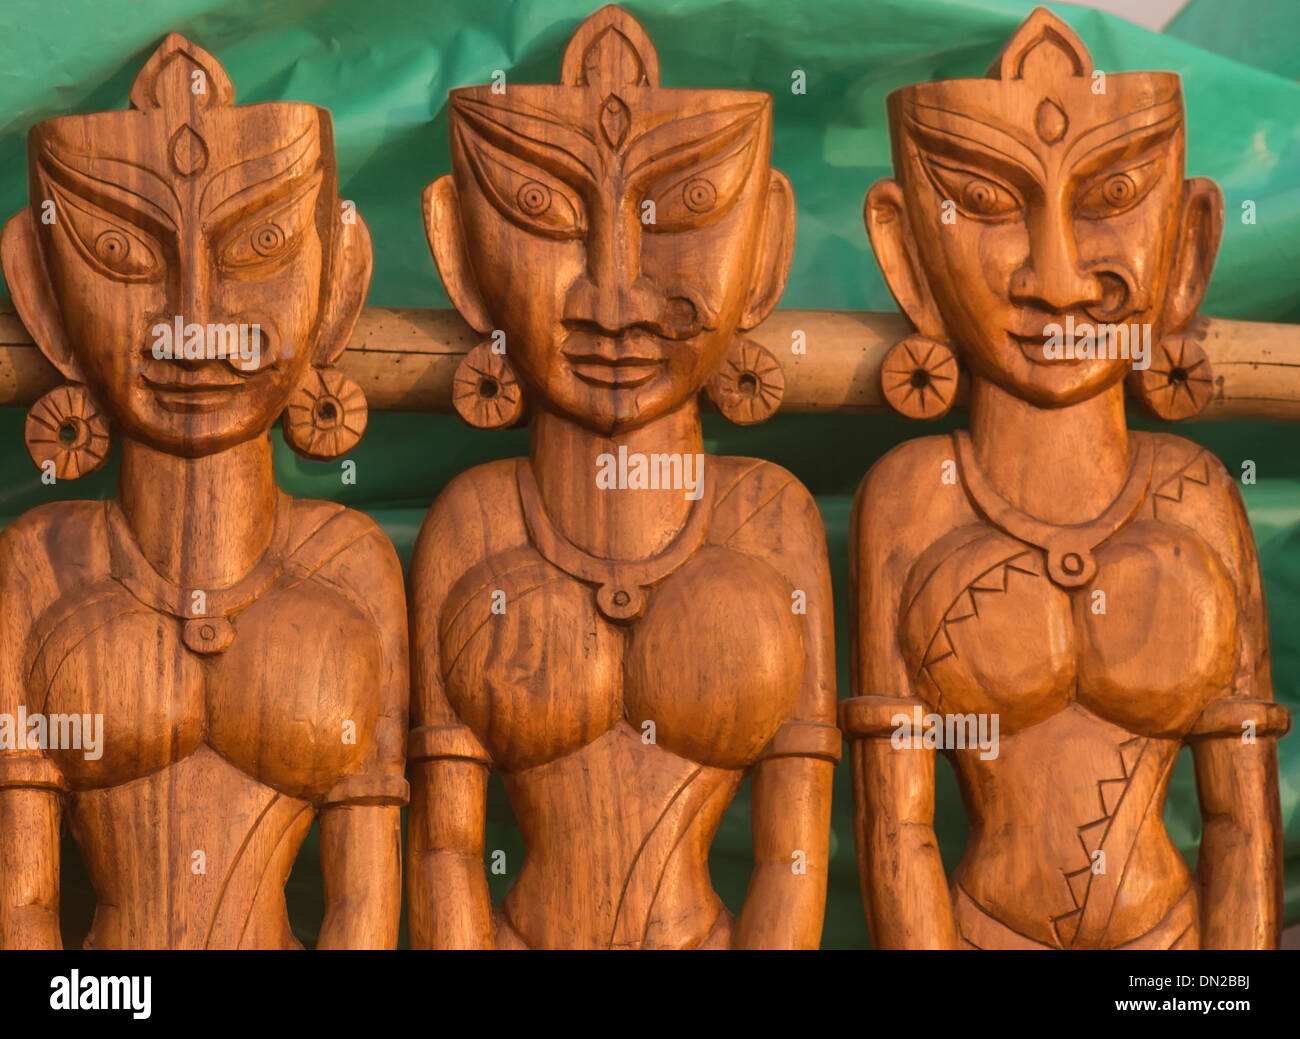 La escultura de madera artesanal en tres adornan las mujeres indias. Foto de stock